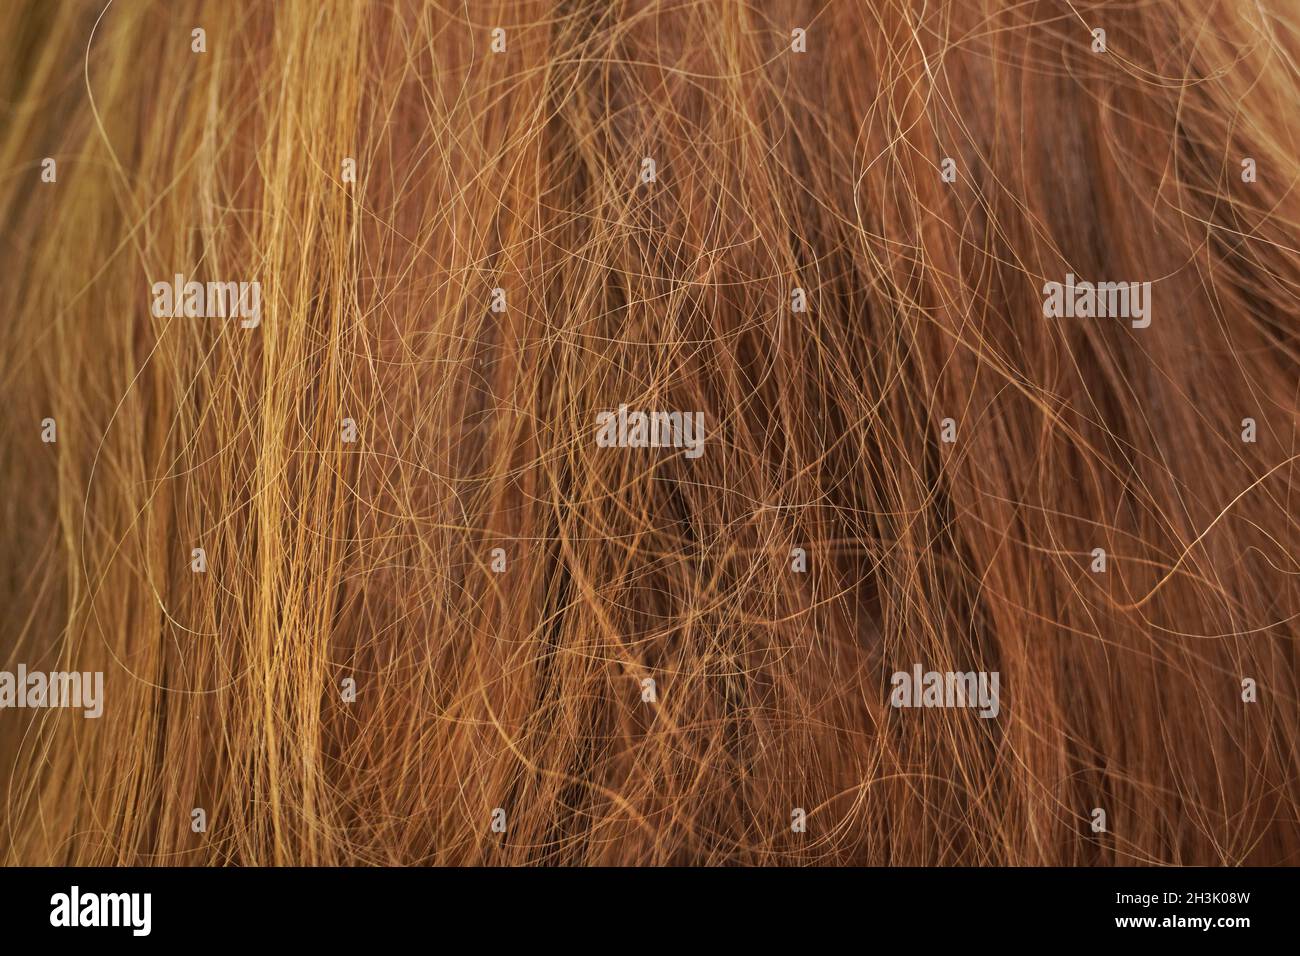 Langes braunes, verworrenes Haar. Hintergrund. Stockfoto